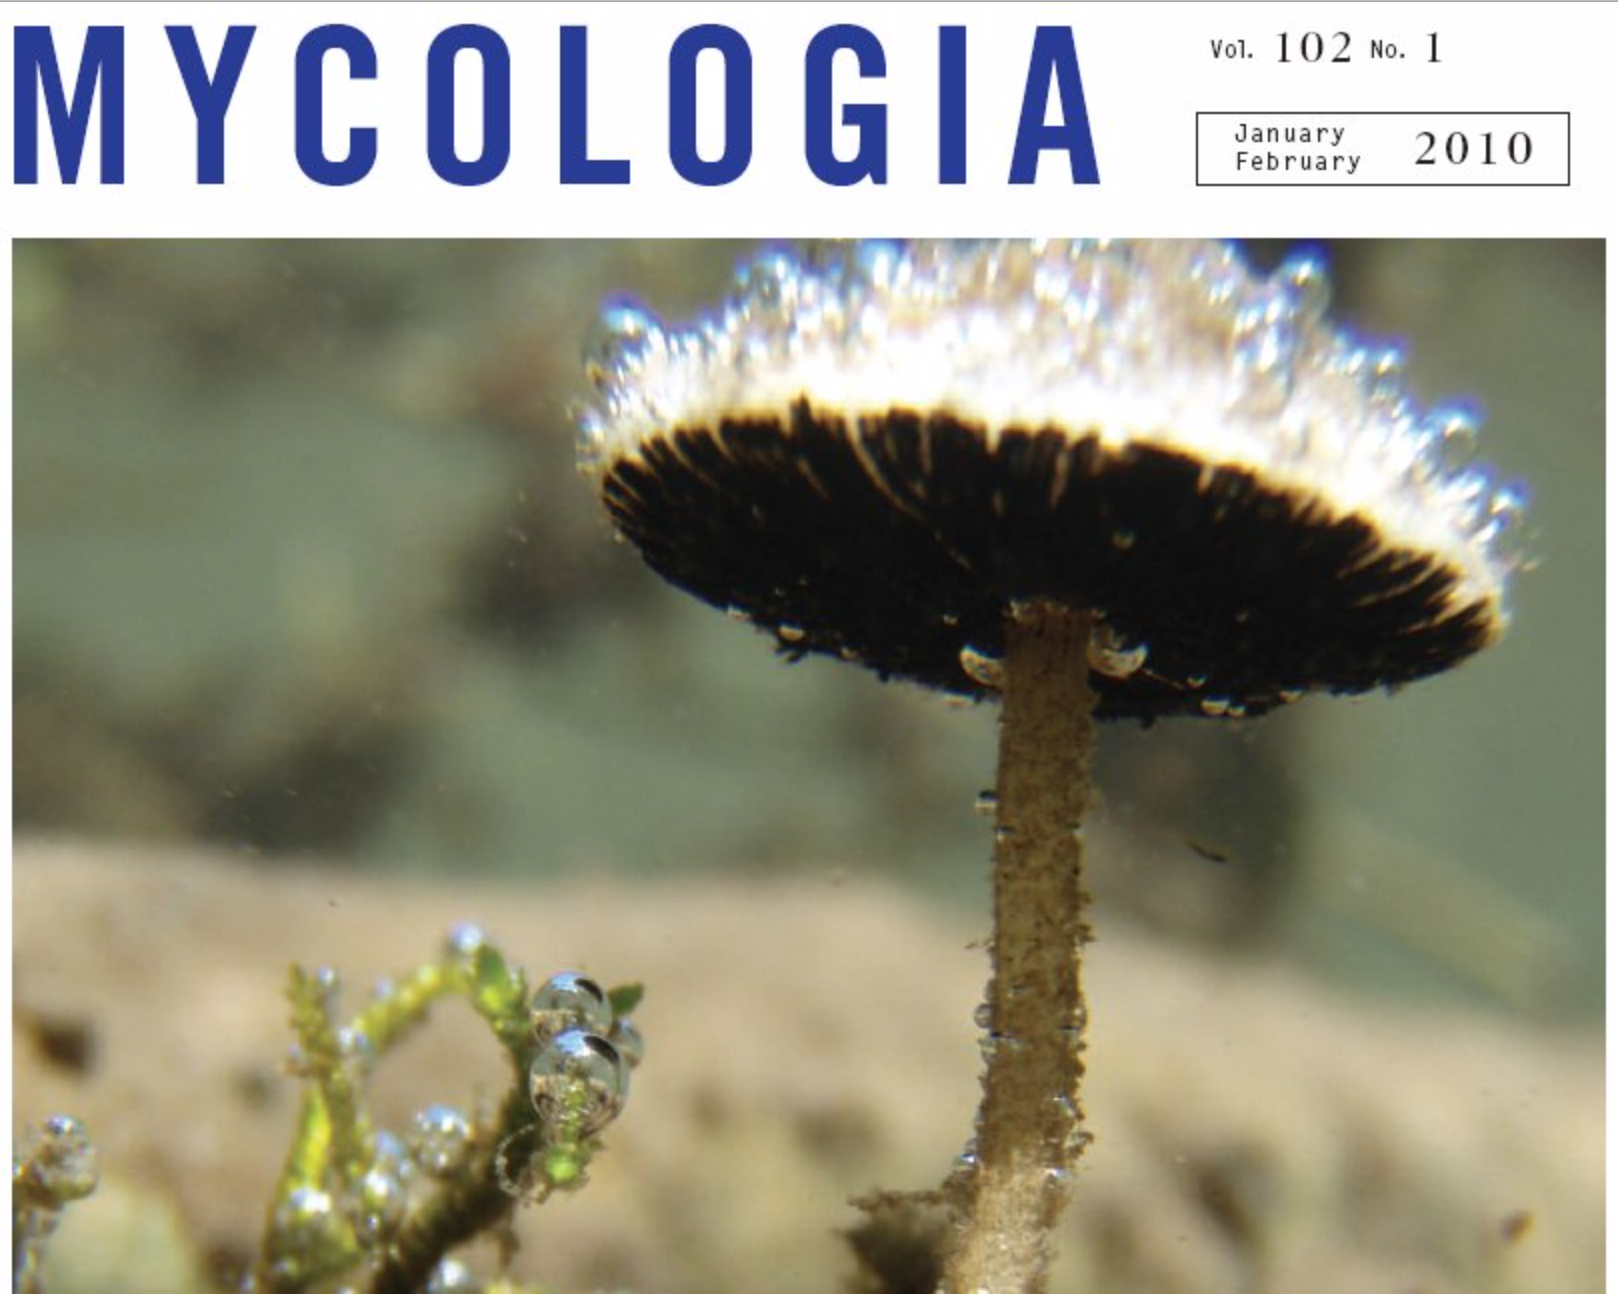 The aquatic gilled mushroom; Psathyrella aquatica.